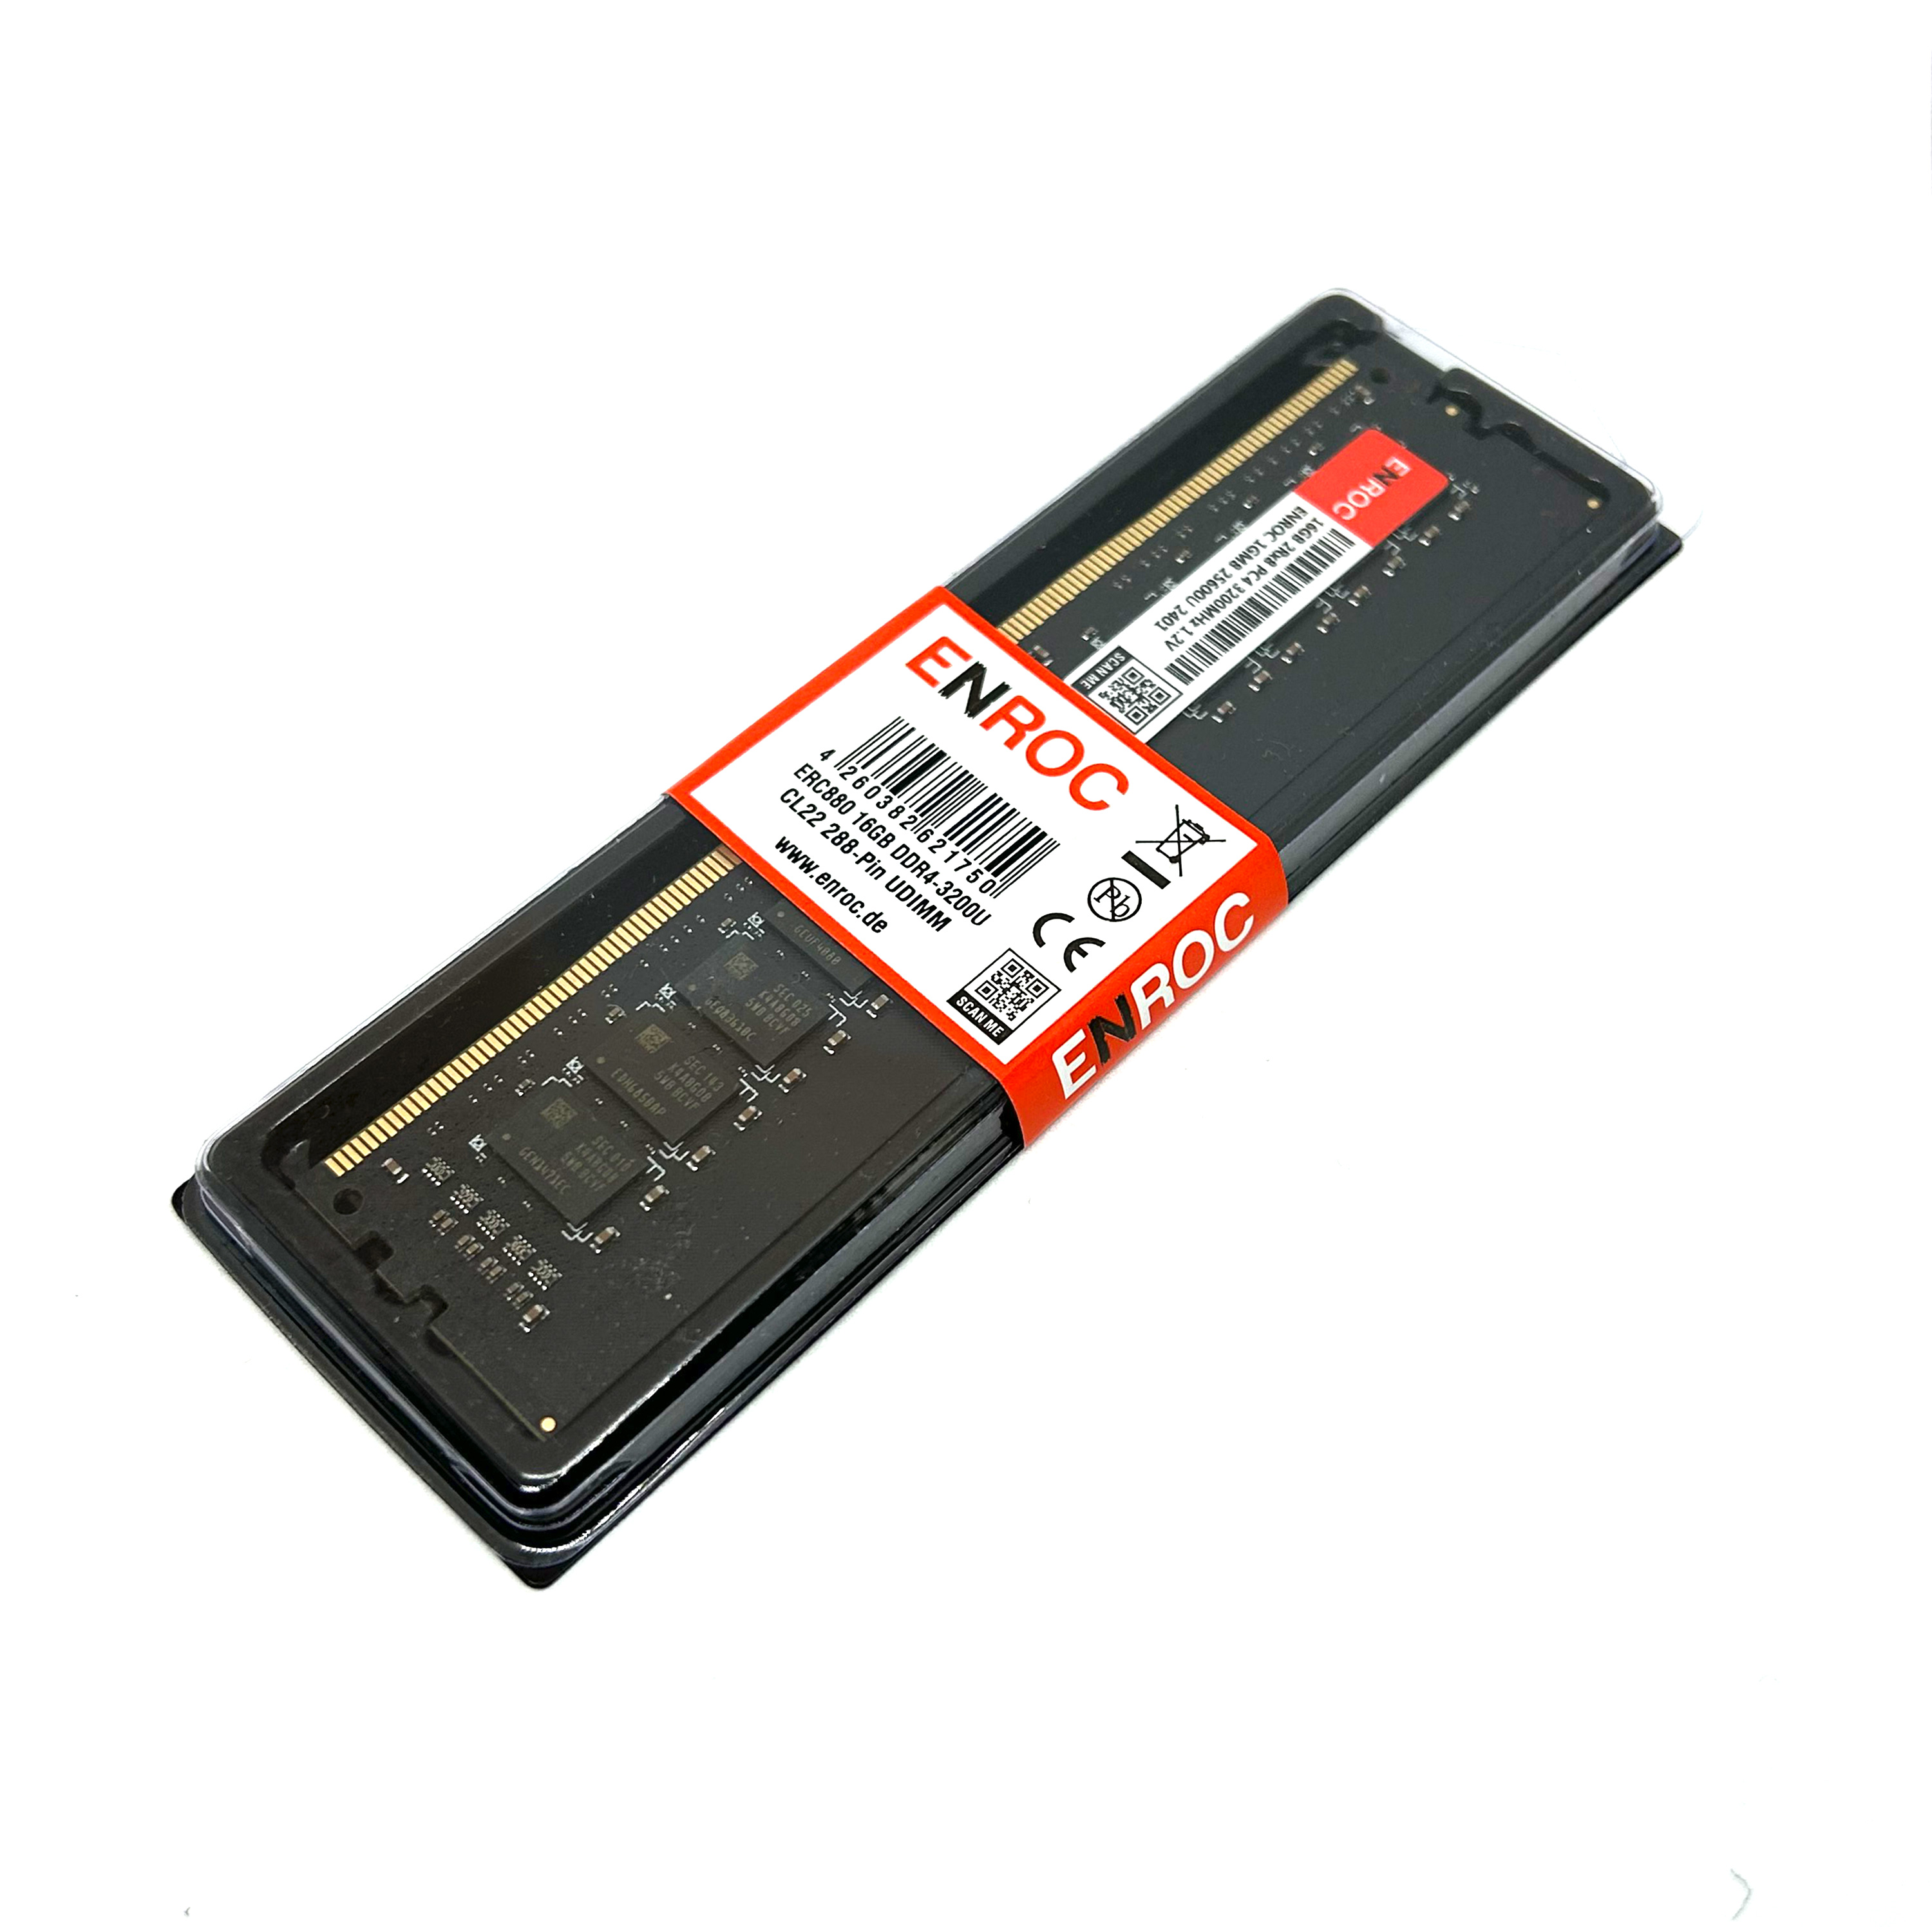 ENROC ERC880 Memory DDR4 RAM 3200 DDR4 GB UDIMM MHz 16 16GB Desktop